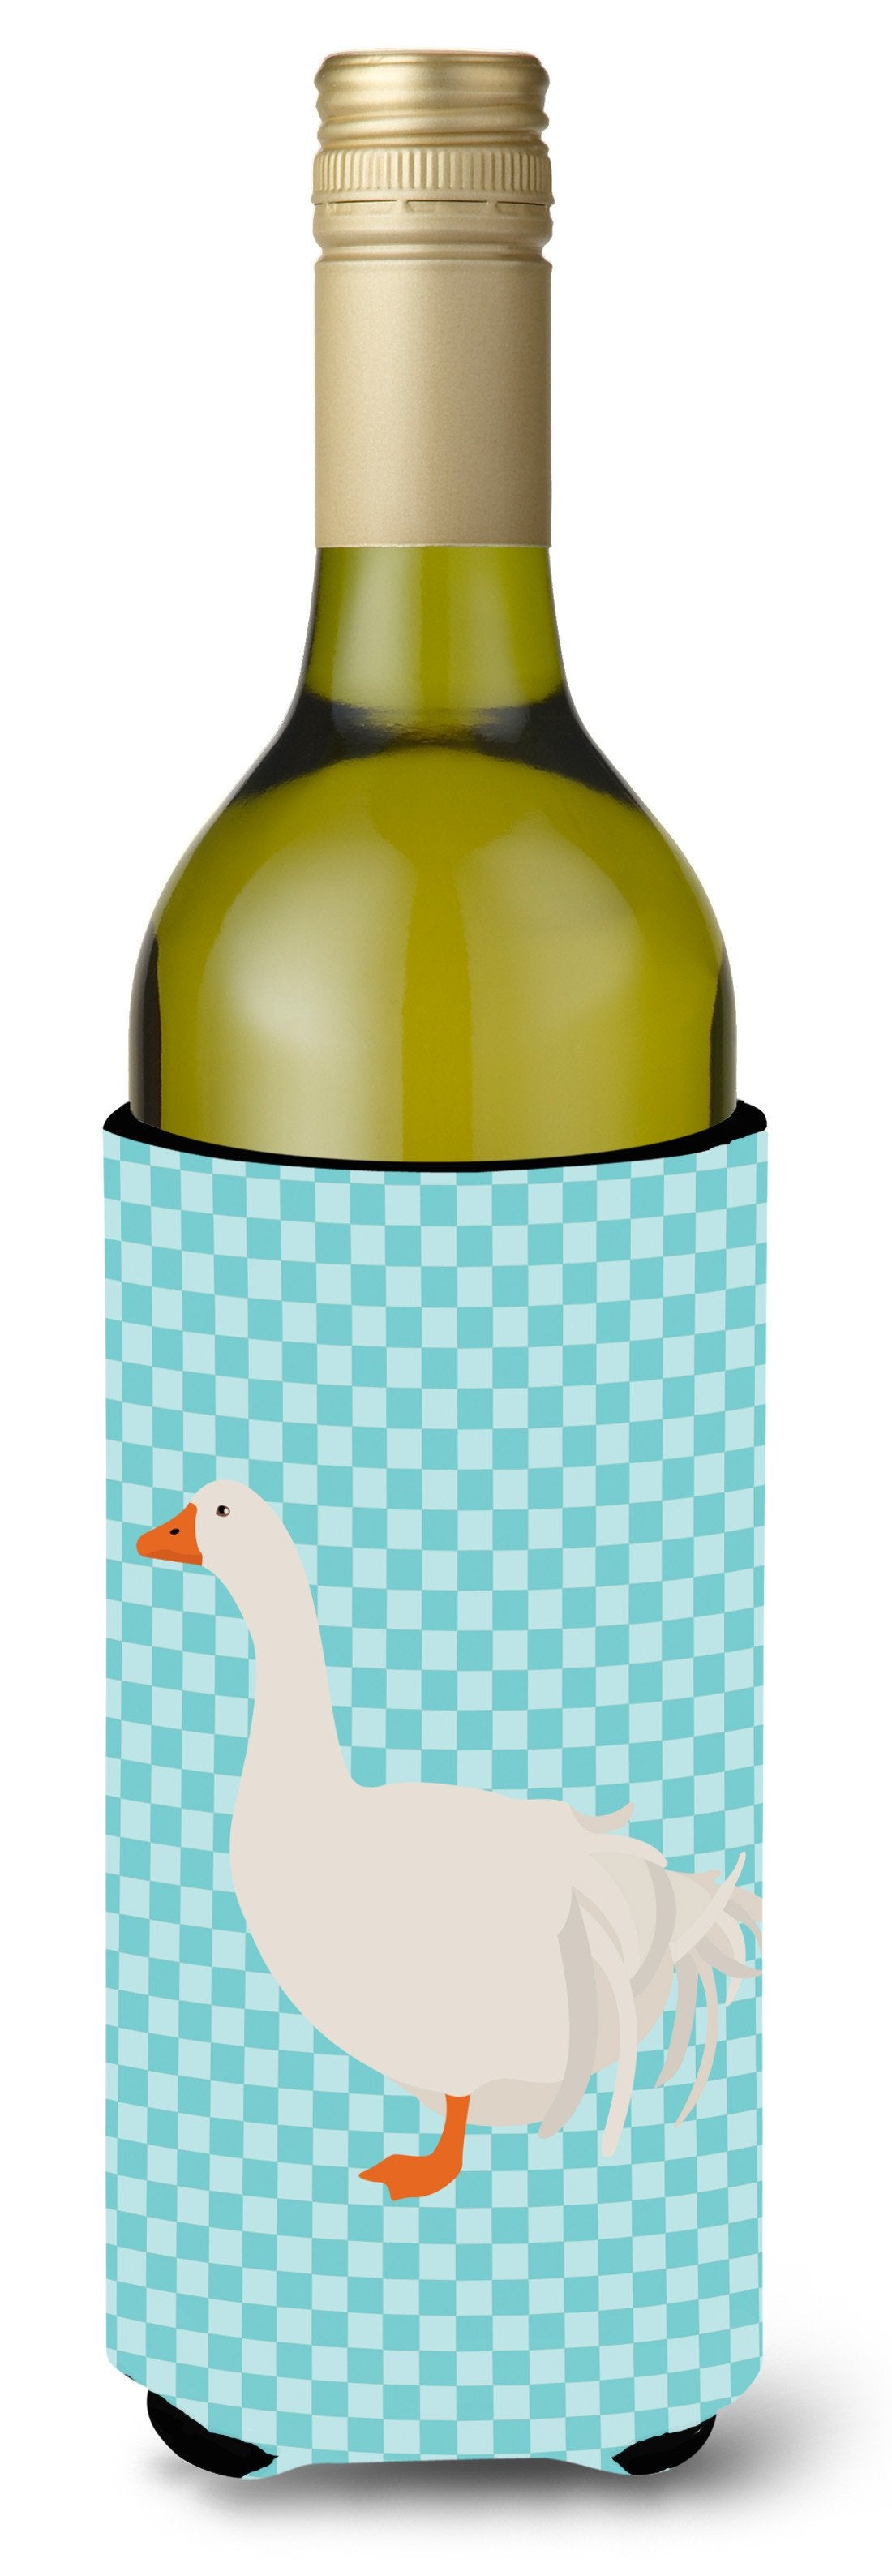 Sebastopol Goose Blue Check Wine Bottle Beverge Insulator Hugger BB8076LITERK by Caroline's Treasures